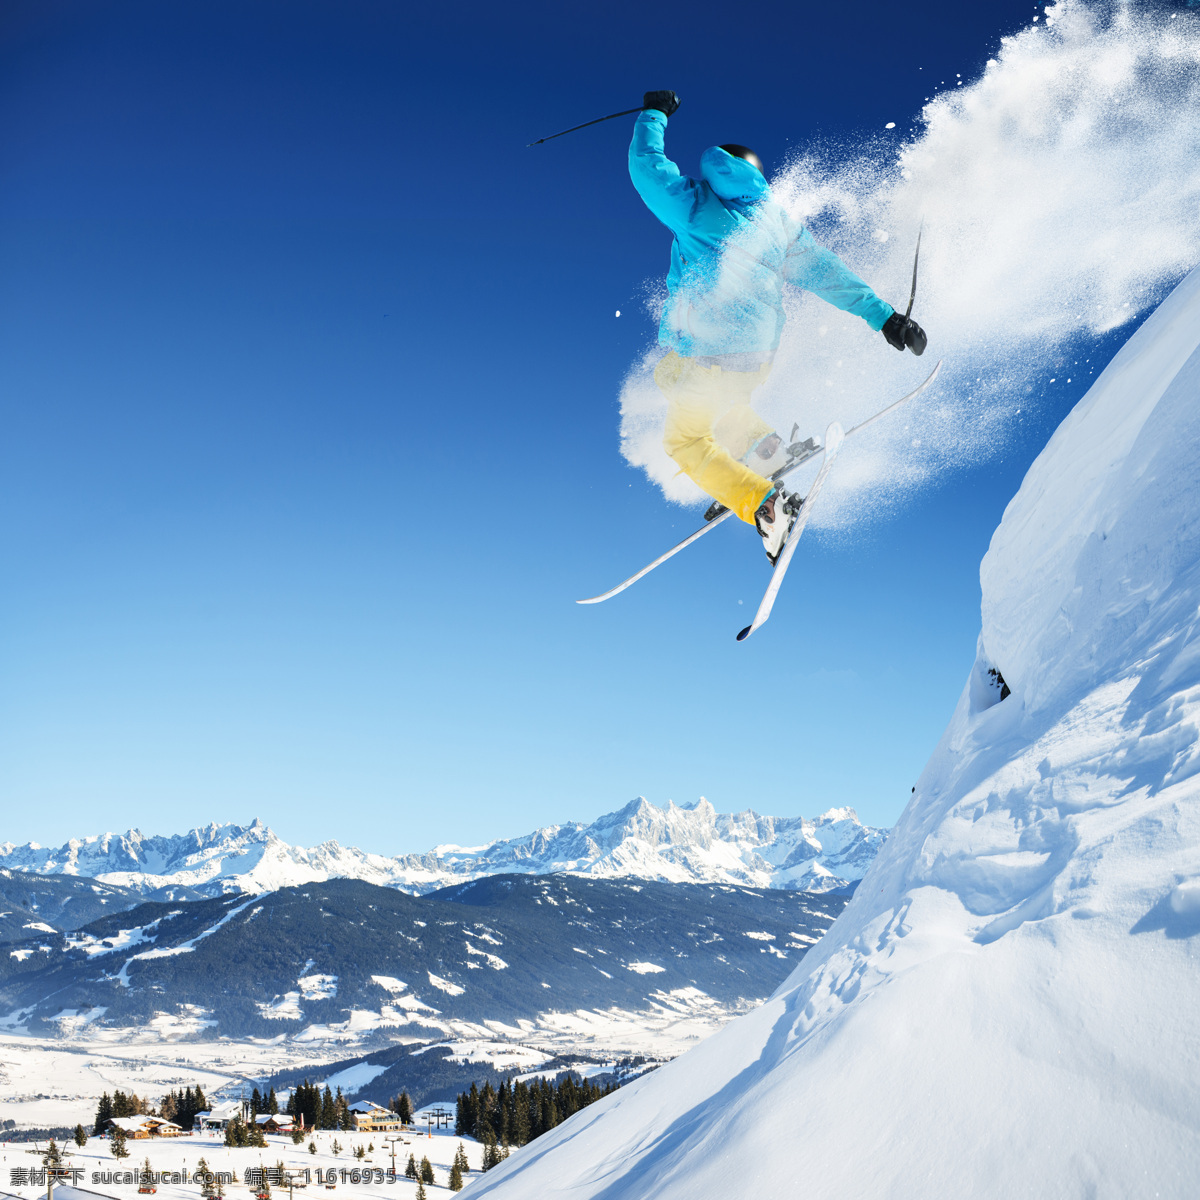 腾空 跃起 滑雪 运动员 蓝天 雪山 山峰 雪地 滑雪运动员 滑雪运动 体育运动 滑雪图片 生活百科